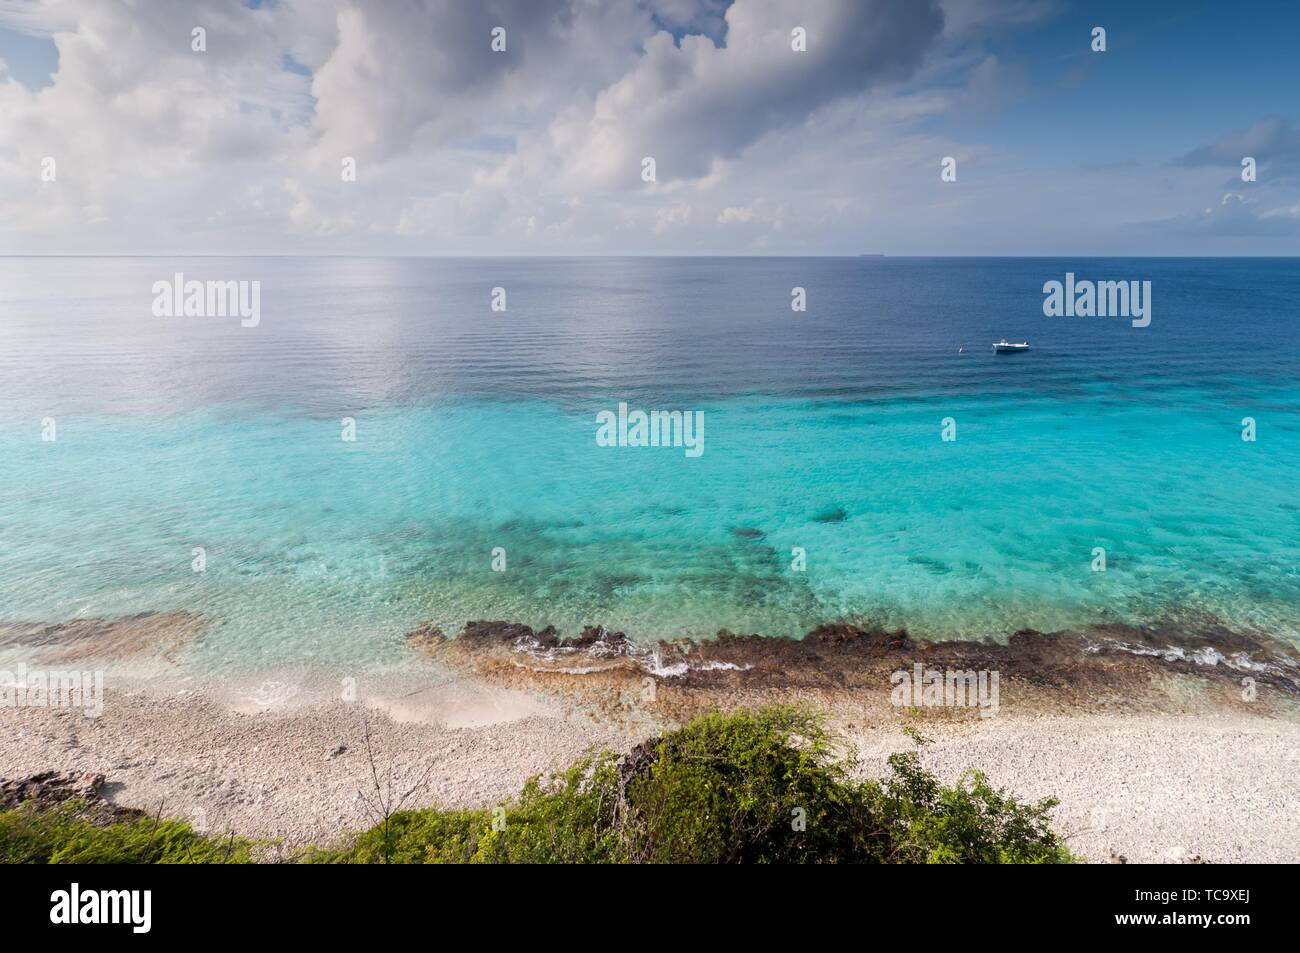 Ein Wahrzeichen Standort auf Bonaire für Schnorcheln, Niederländische Ð¡aribbean Insel. Stockfoto